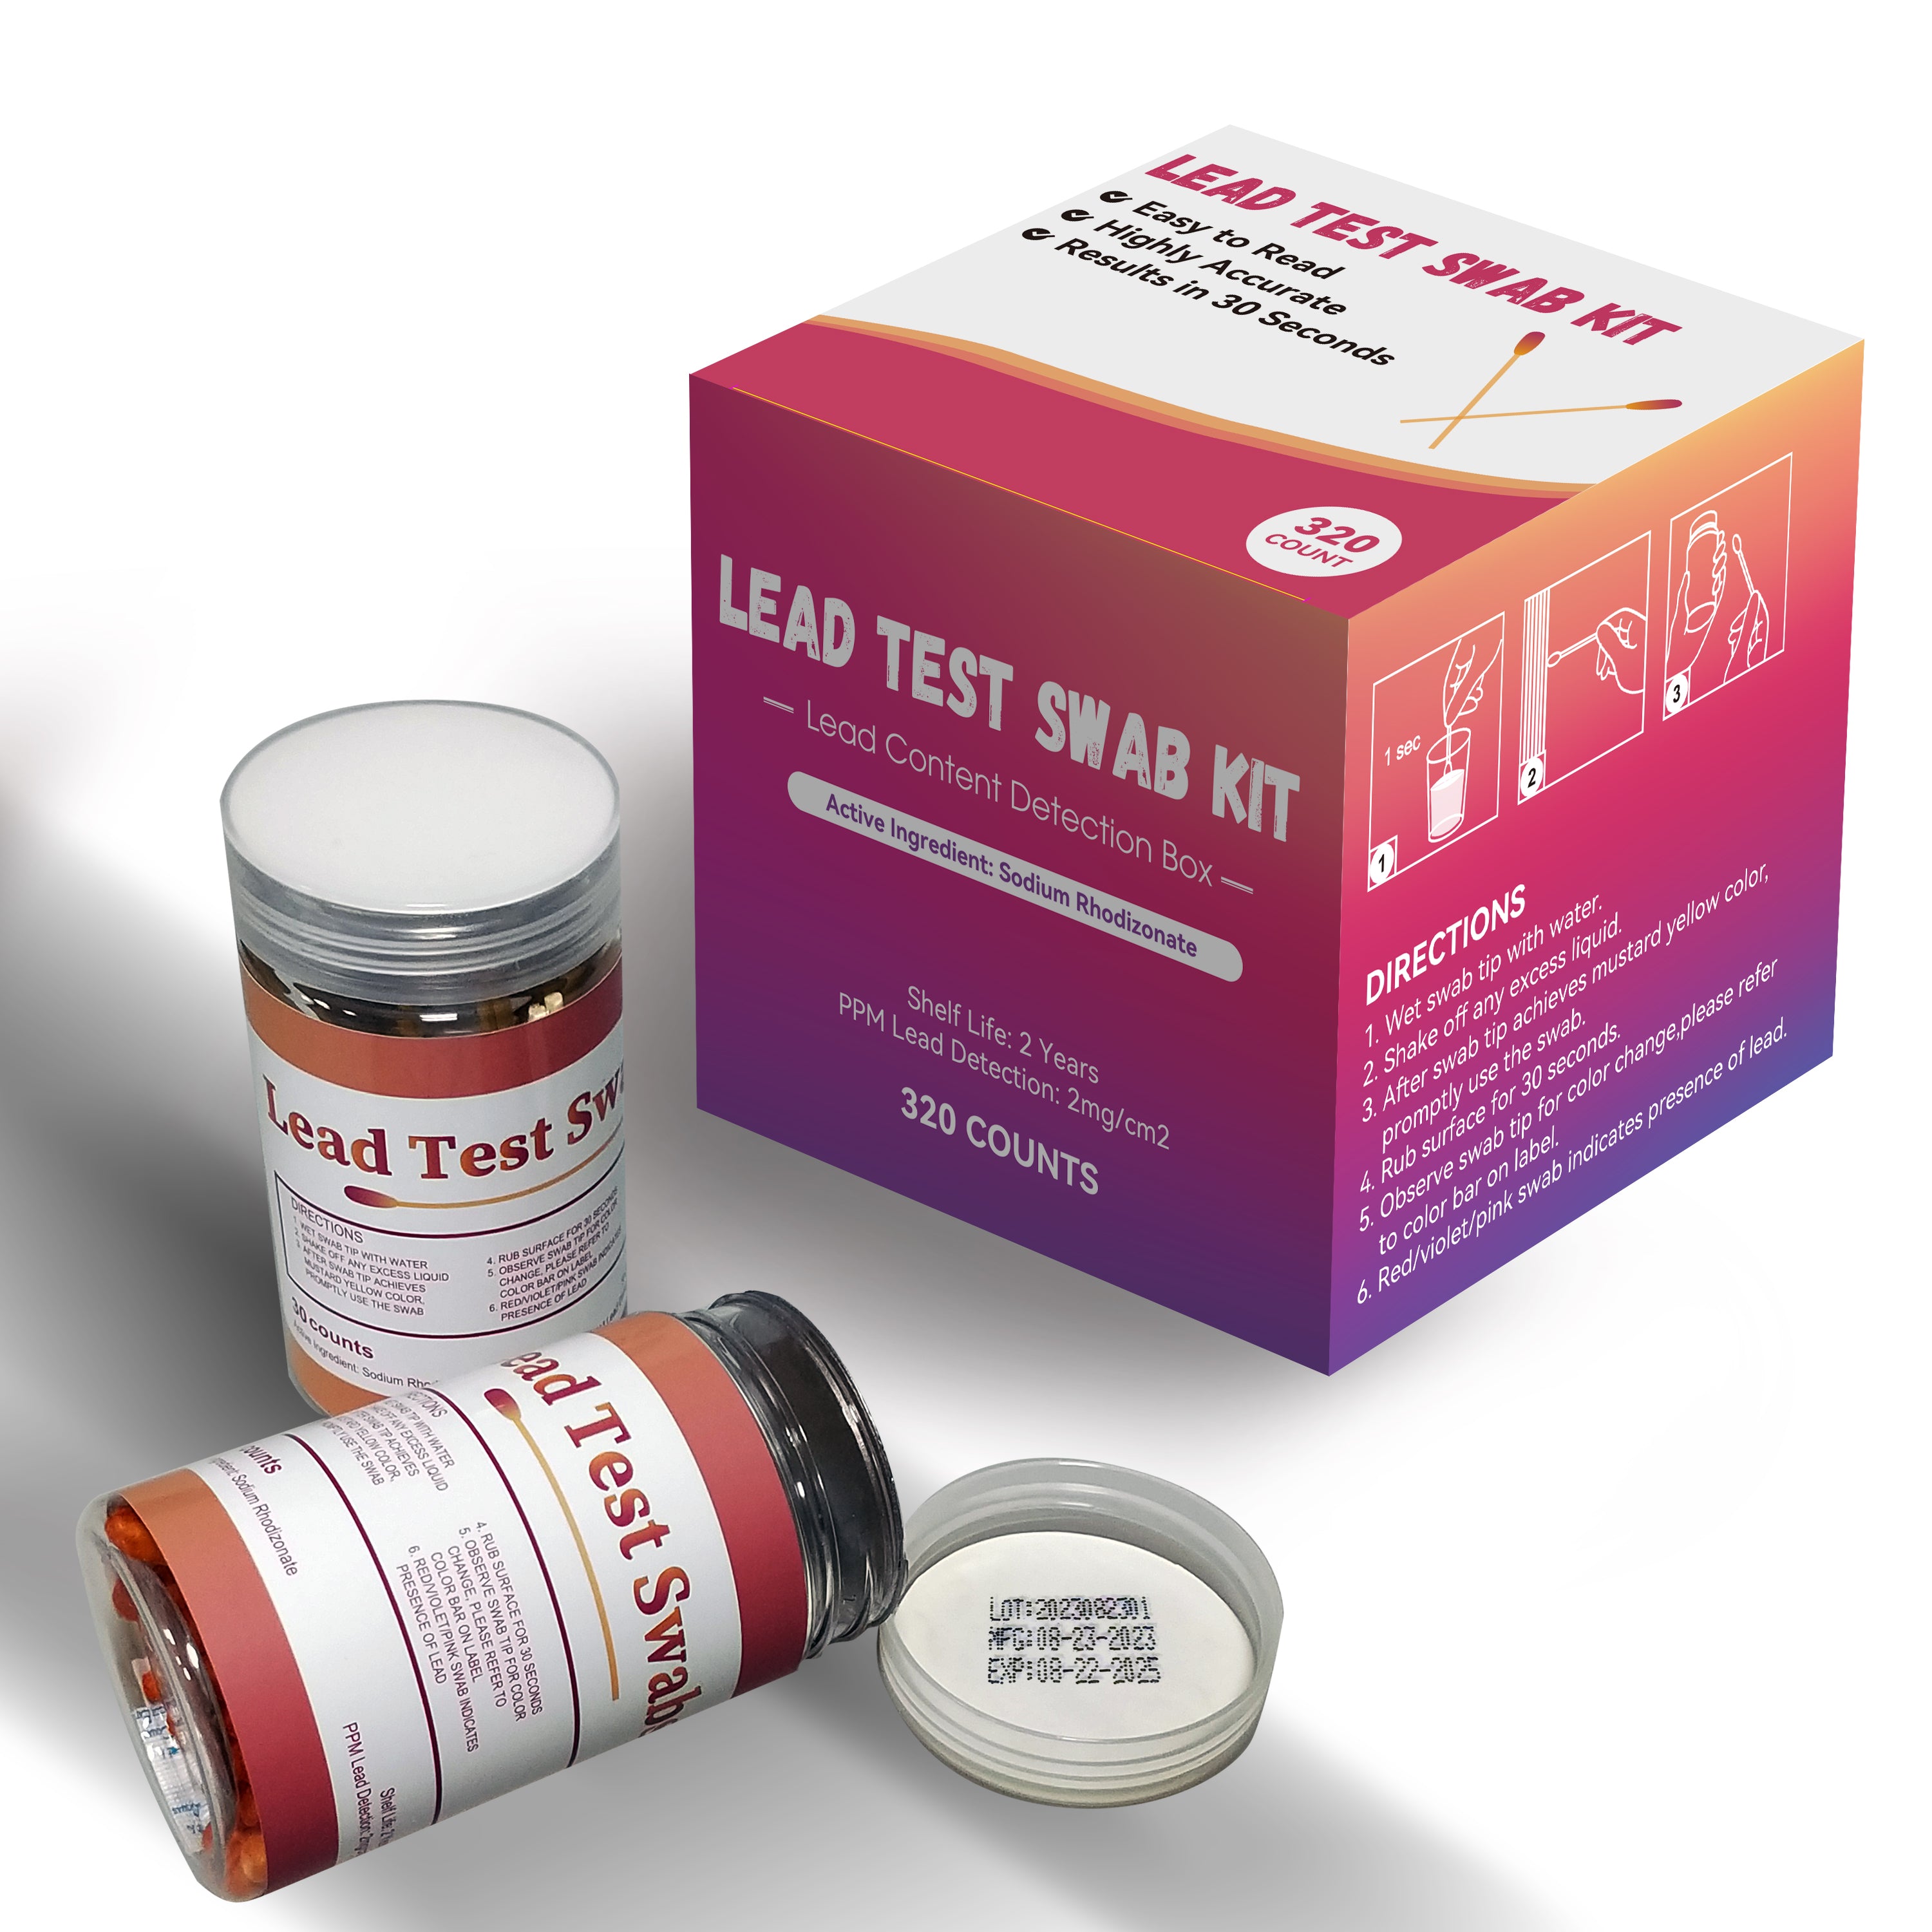 Lead test kit